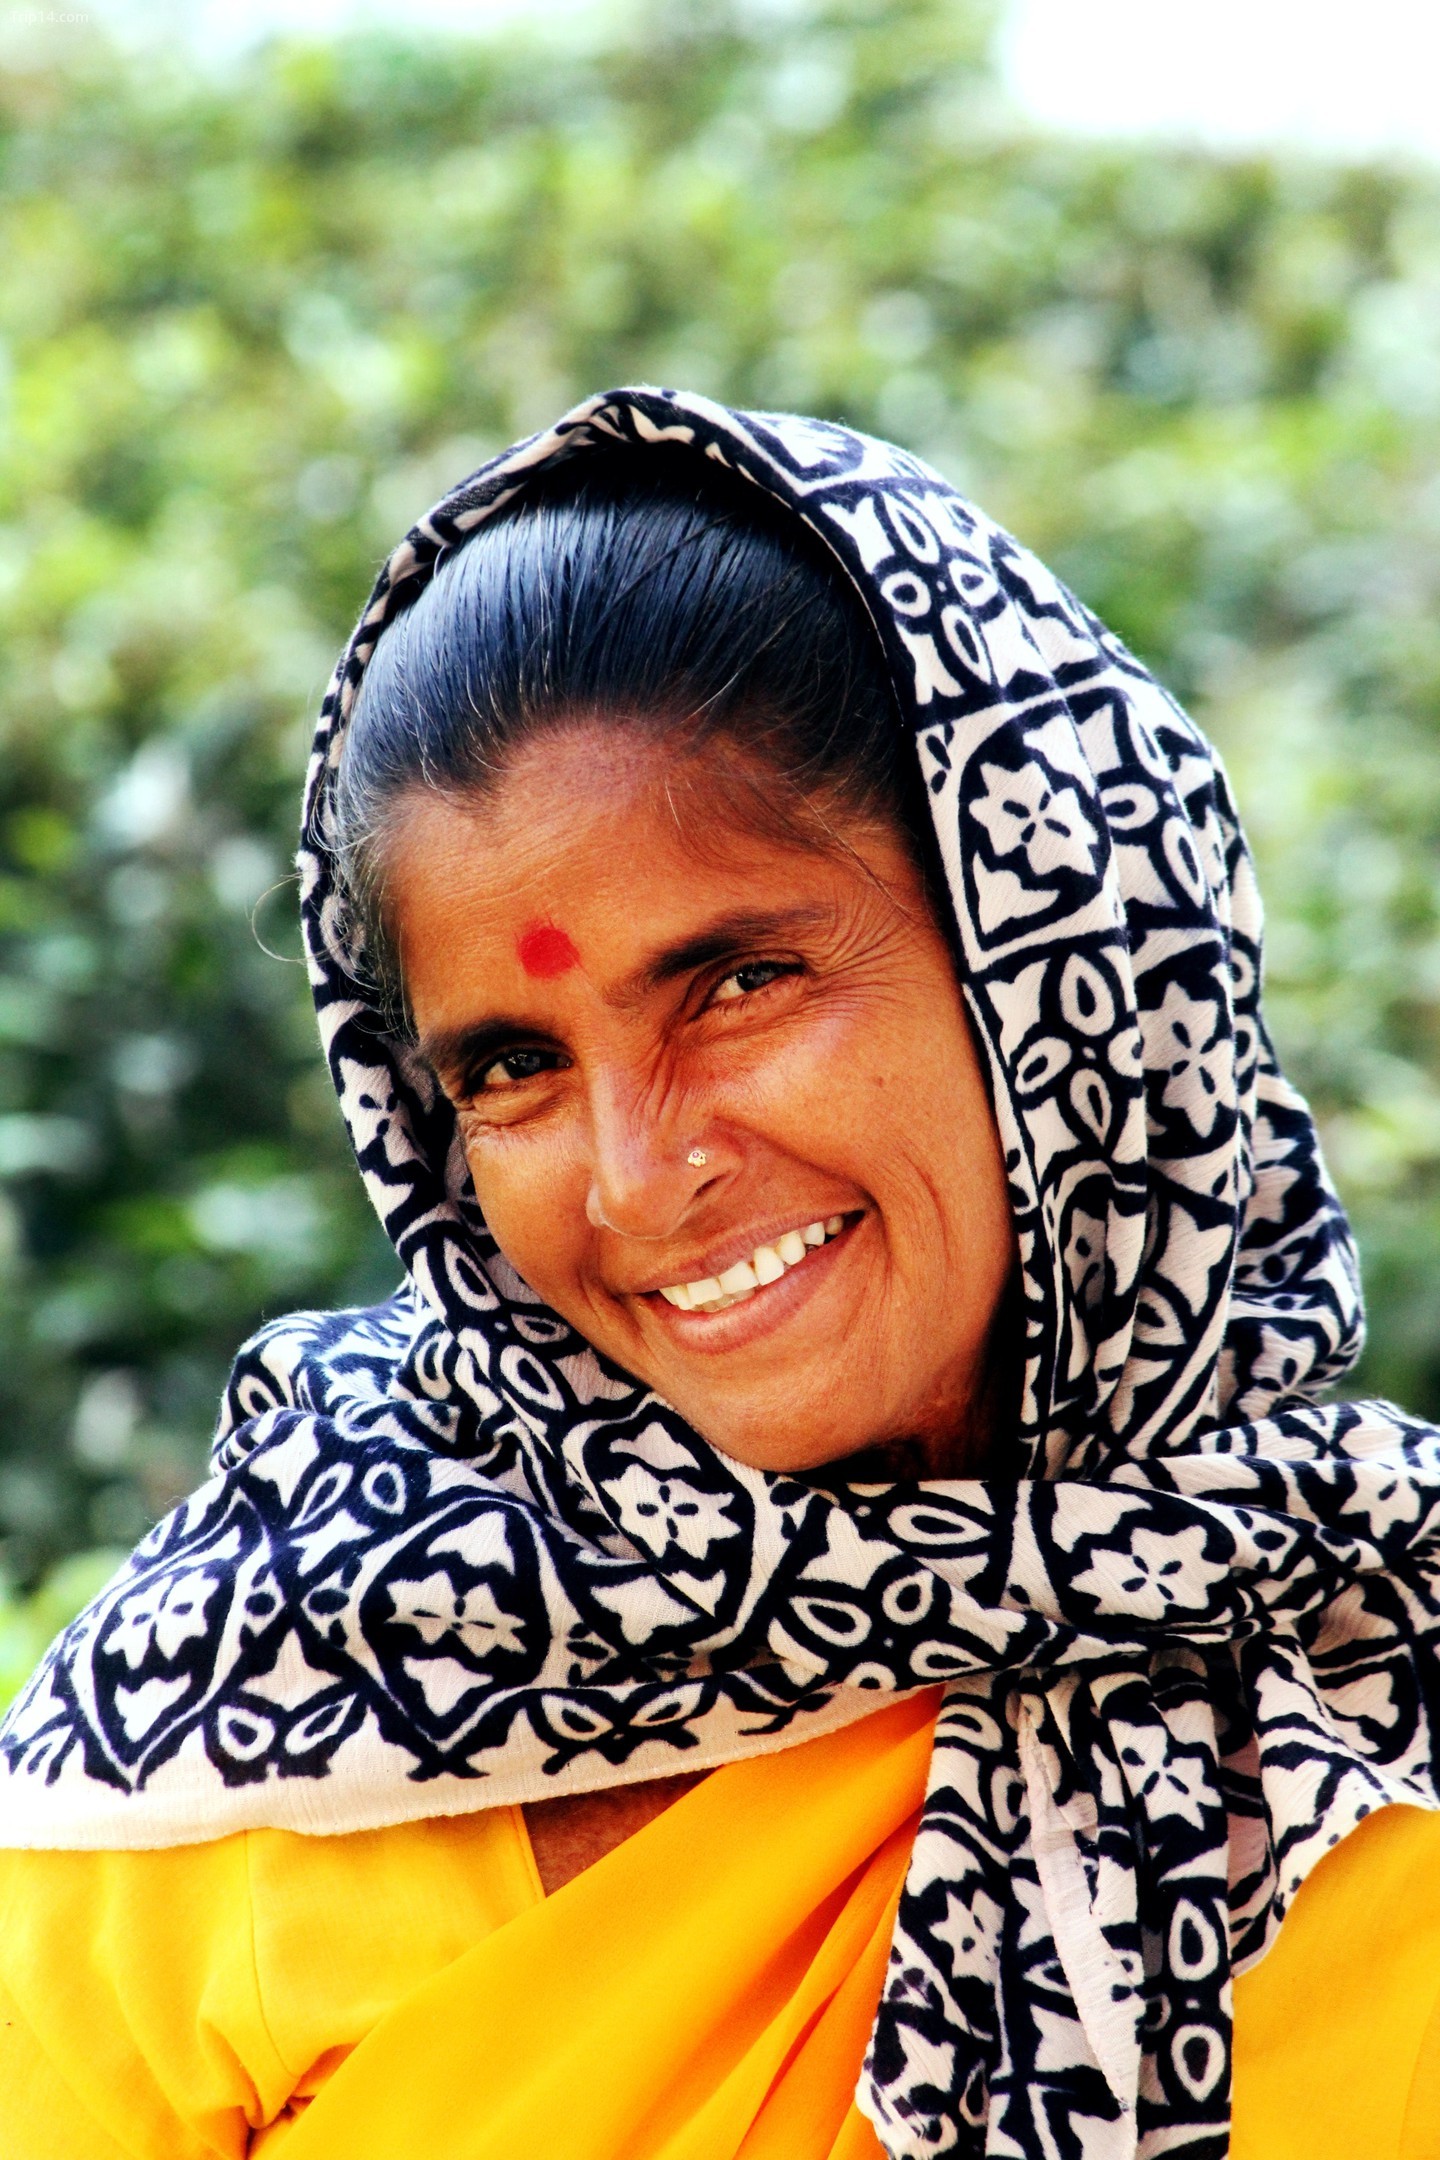 Cái gật đầu của người Ấn Độ để nói lời cảm ơn hoặc vâng thường đi kèm với một nụ cười